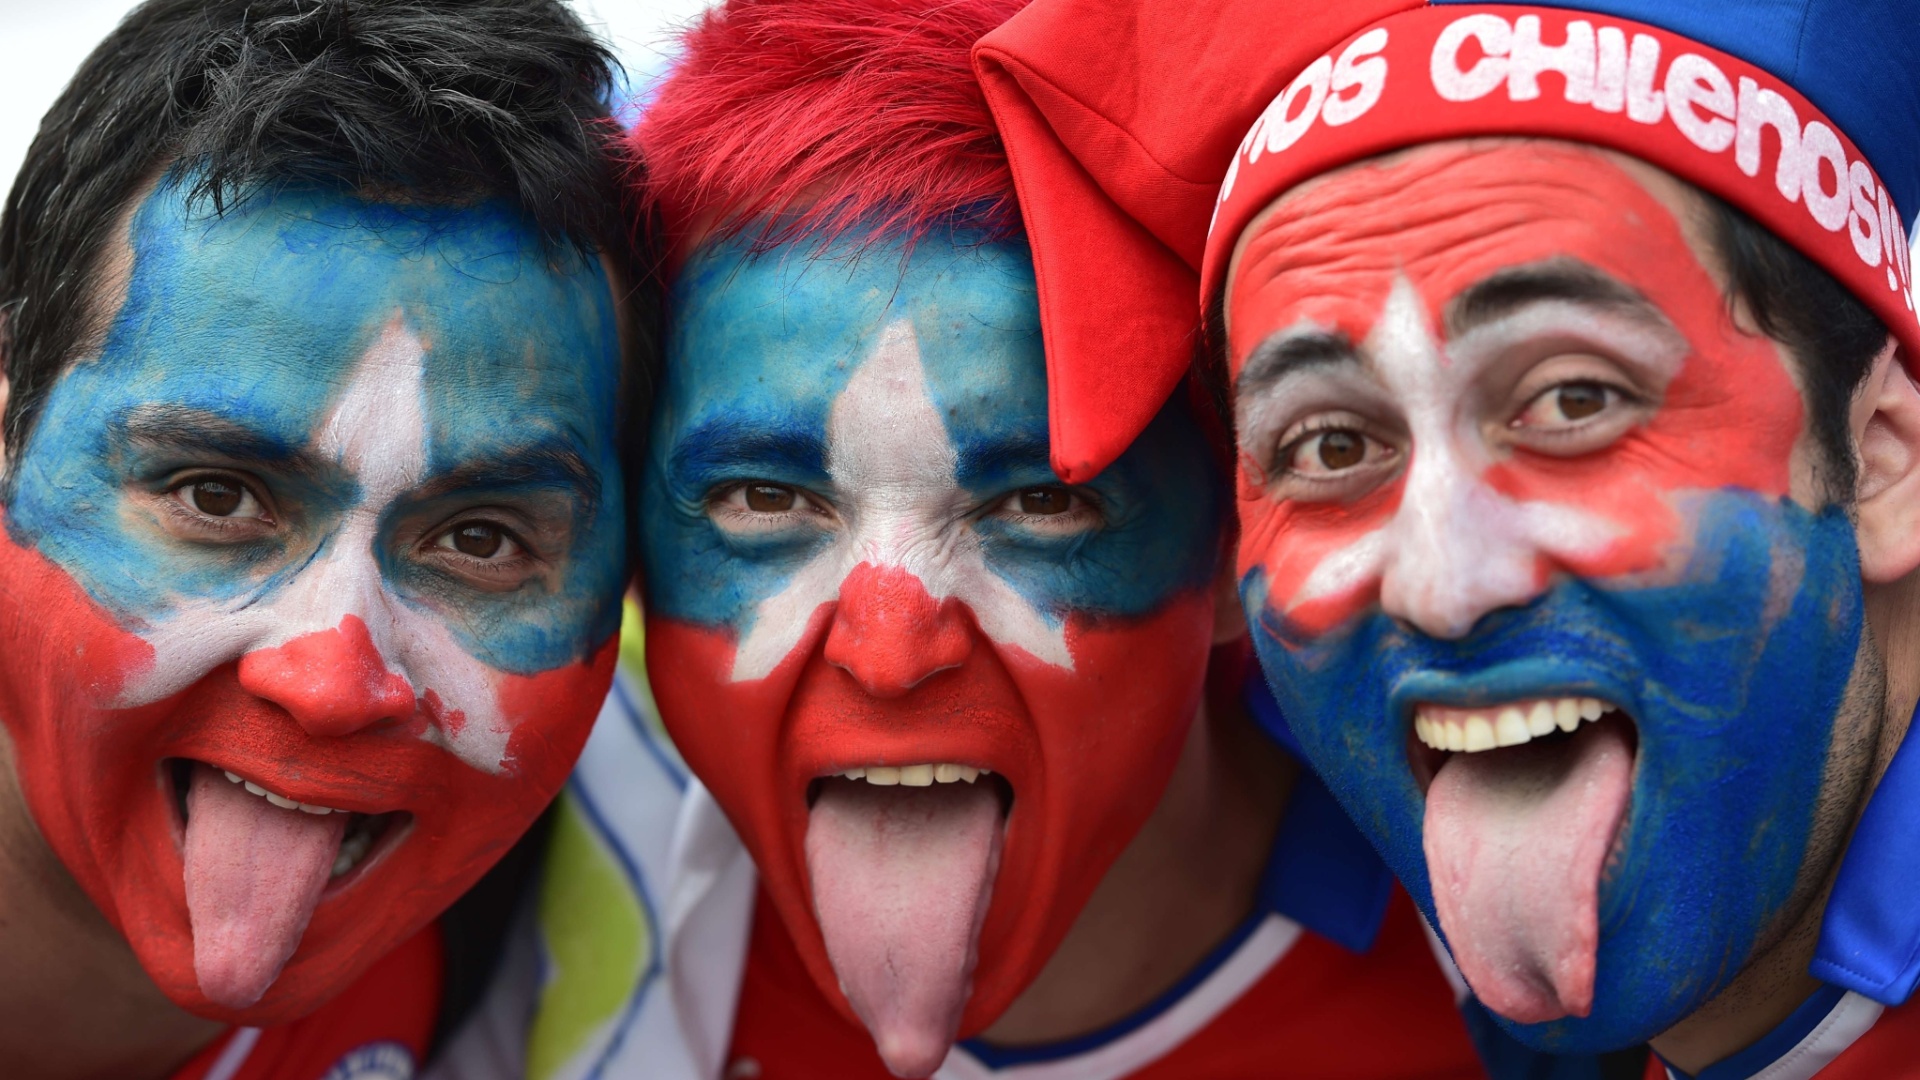 Com rosto pintado, chilenos mostram a língua e esbanjam otimismo antes de jogo contra a Holanda